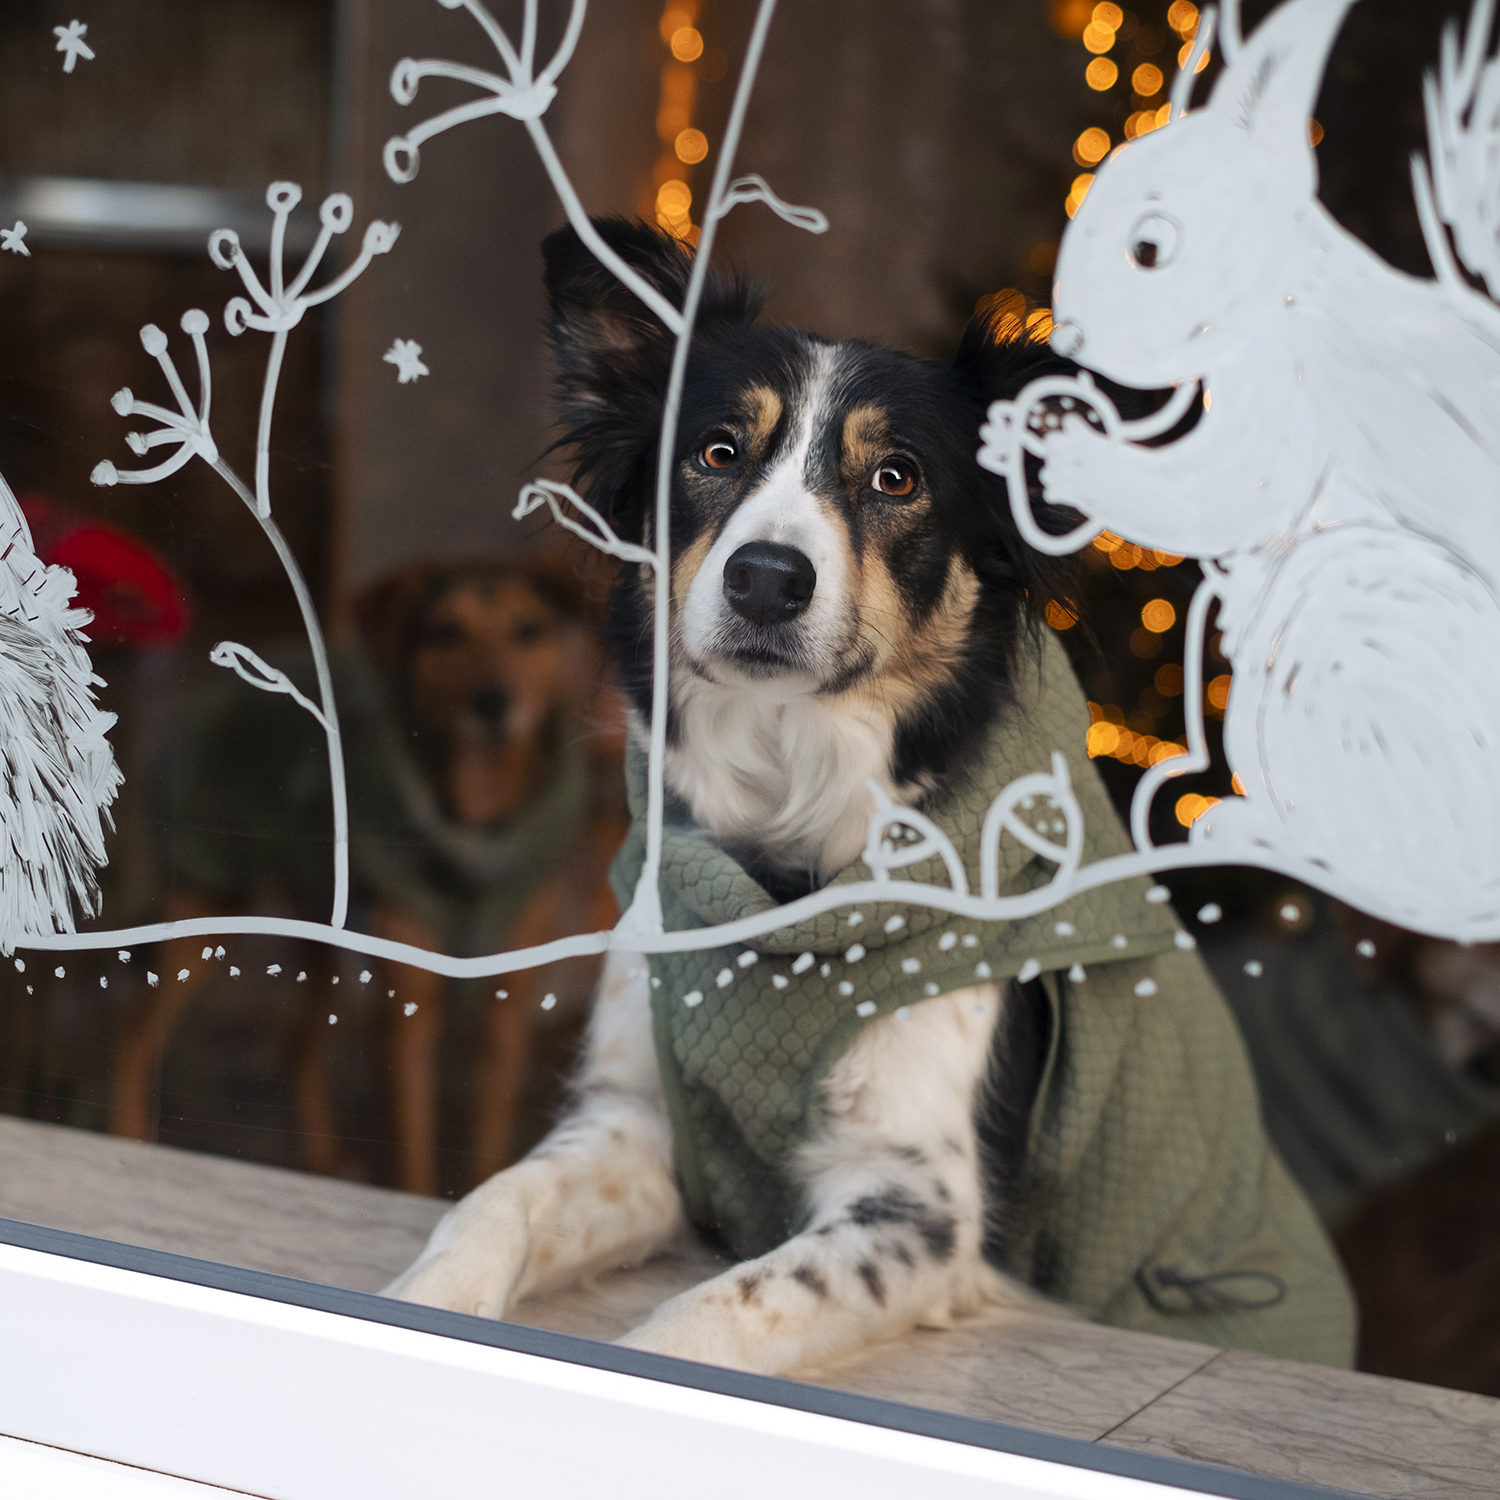 Dog Christmas aesthetic, dog photography, www.DOGvision.eu